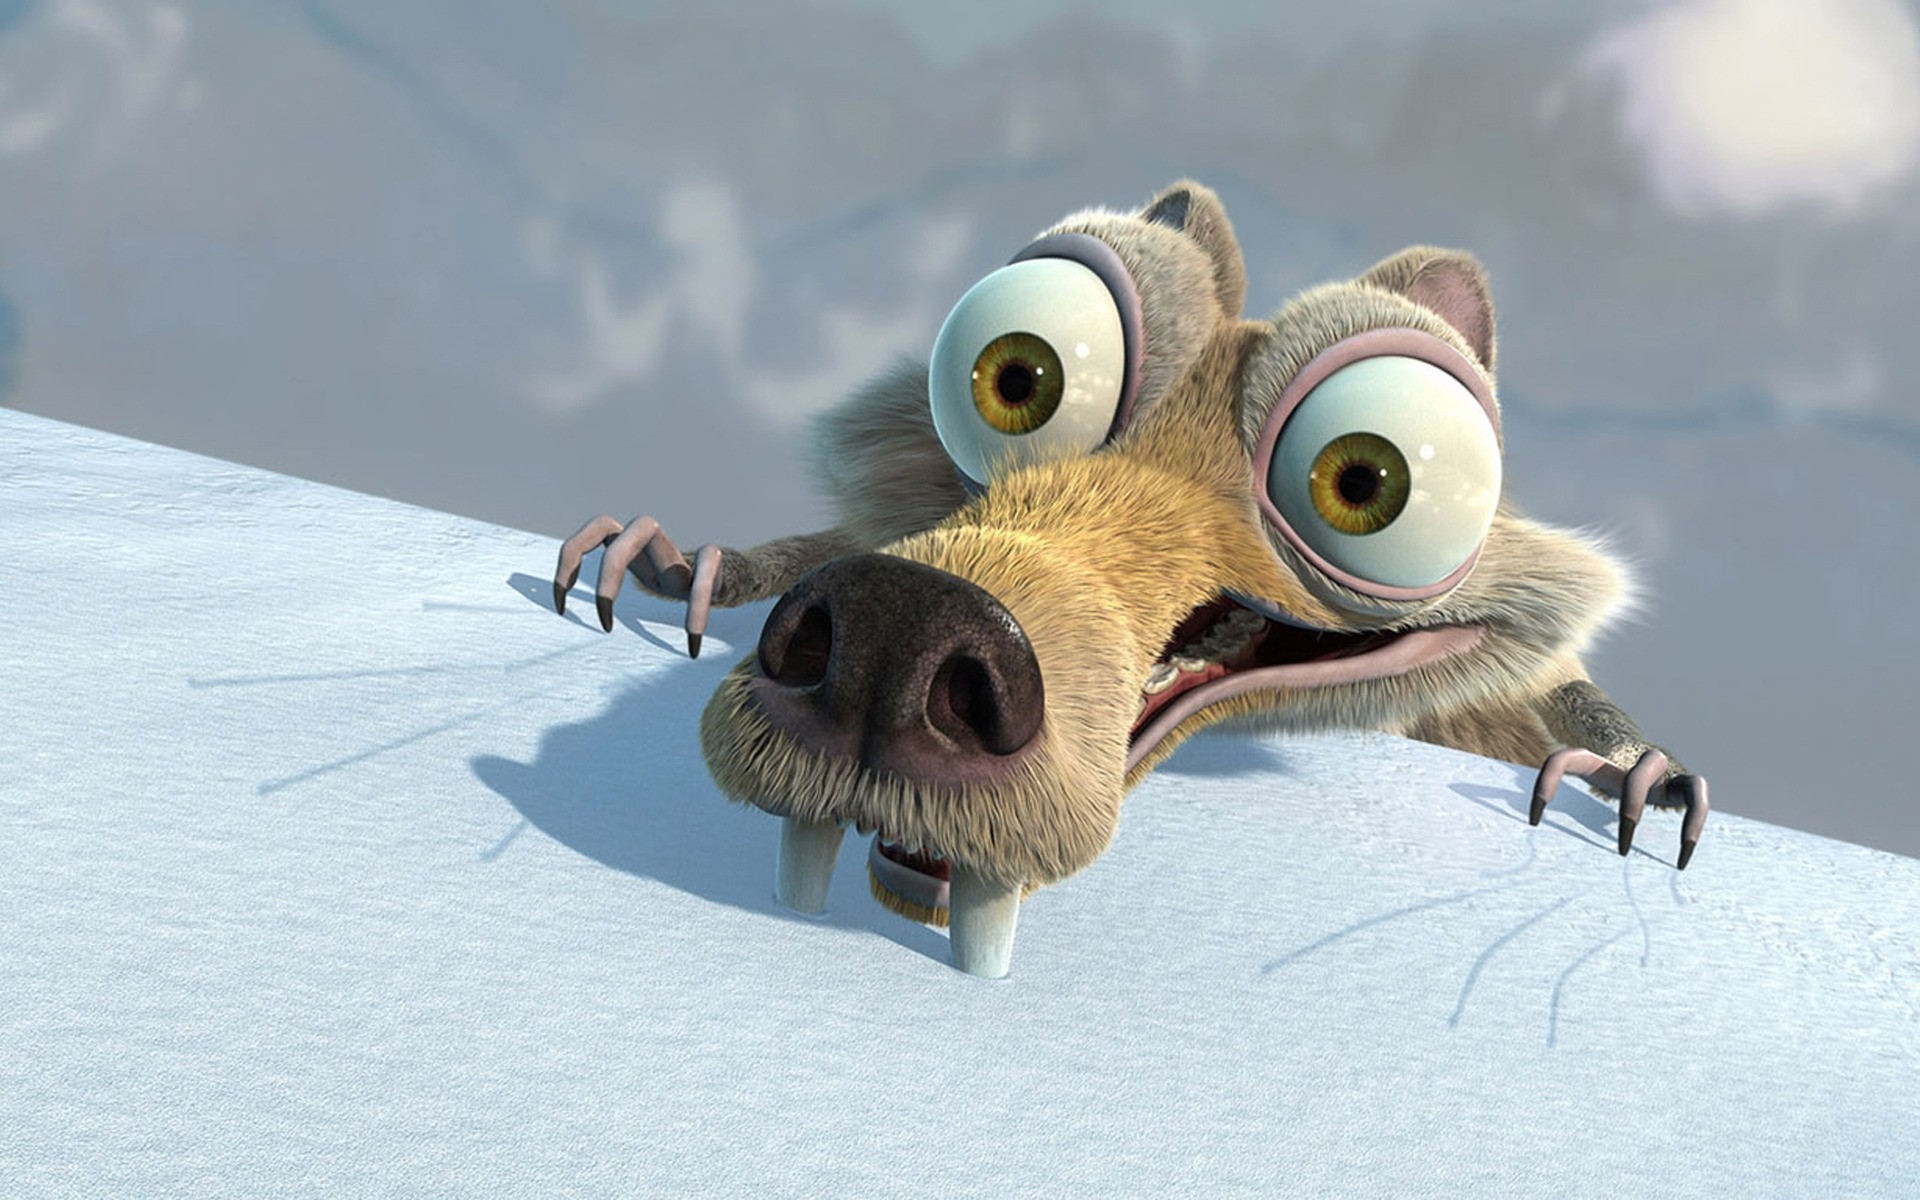 фильмы снег зима птица природа животное морозный холодная дикой природы анимация пиксар комедия приключения